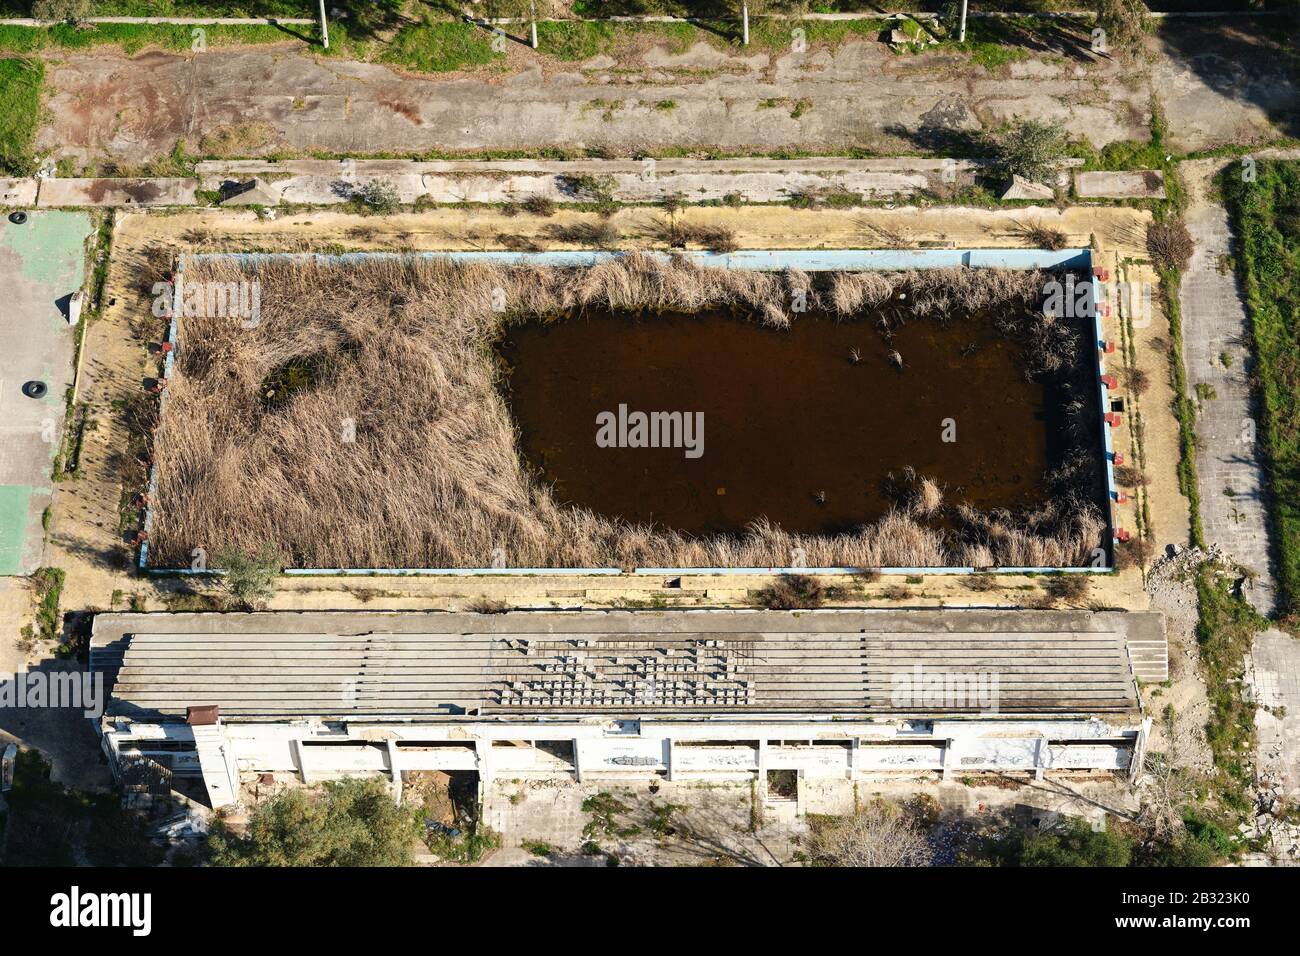 VISTA AEREA. Piscina olimpionica abbandonata rigenerata dalla vegetazione. Patrasso, Grecia occidentale, Penisola del Peloponneso, Grecia. Foto Stock